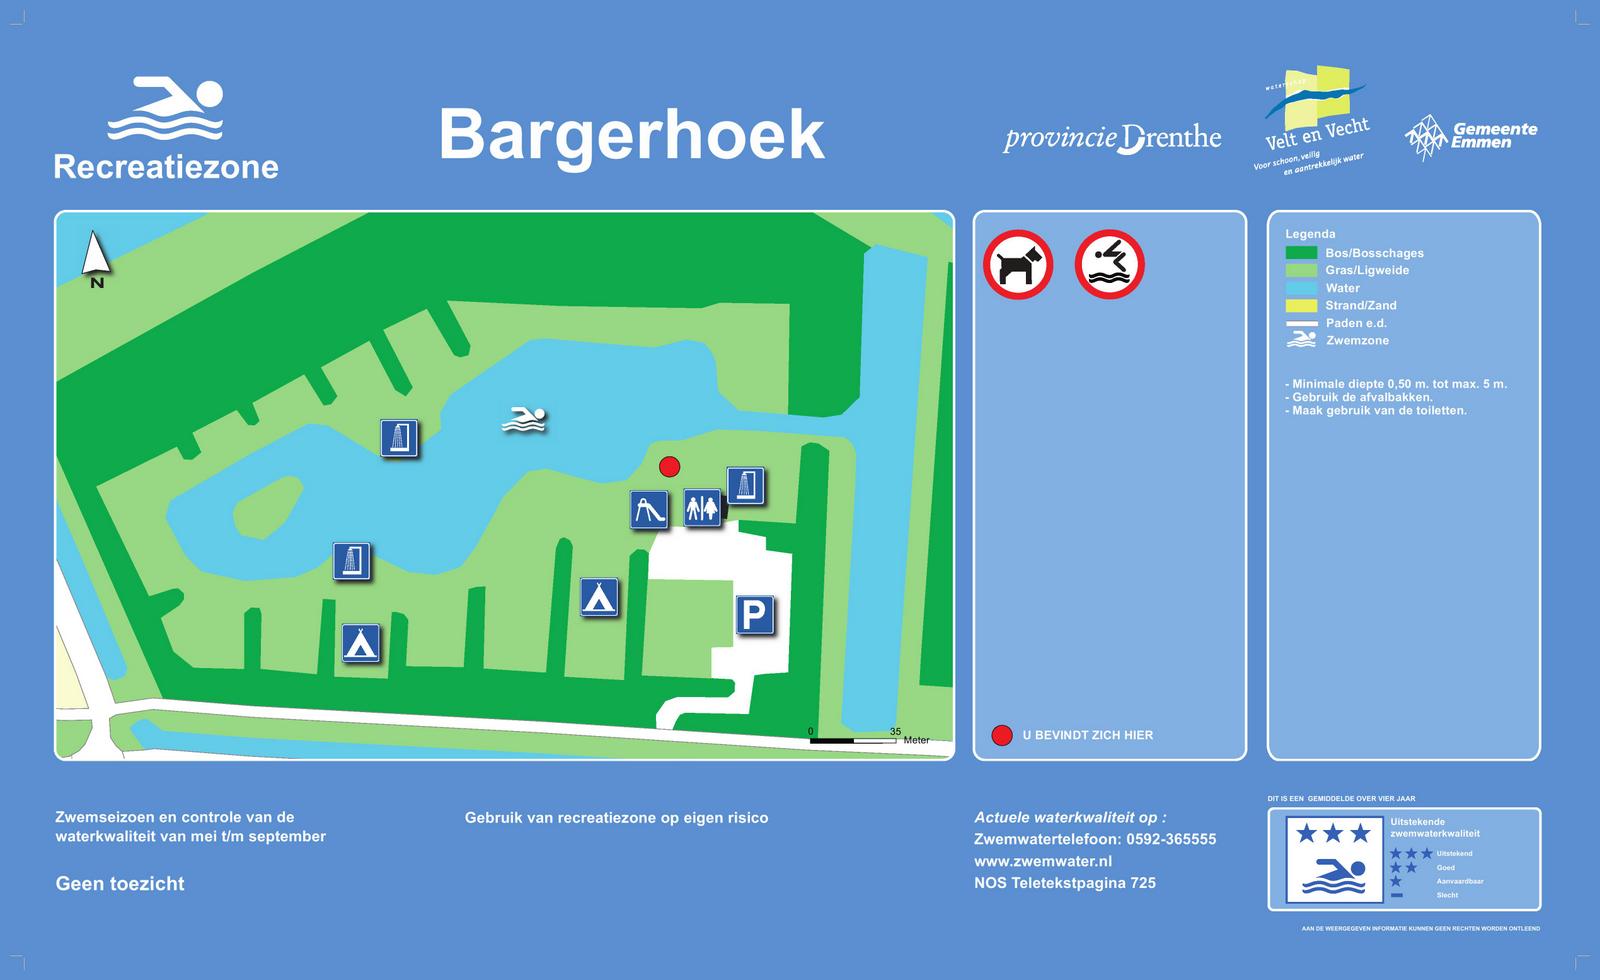 Het informatiebord bij zwemlocatie Bargerhoek